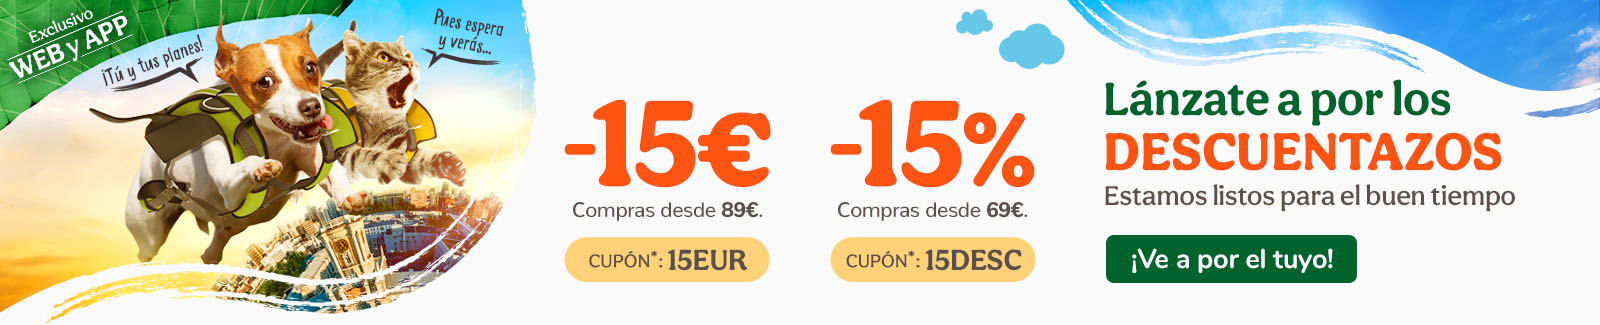 -15€ o -15% dto en tu compra de alimentación, accesorios e higiene con los cupones 15EUR o 15DESC